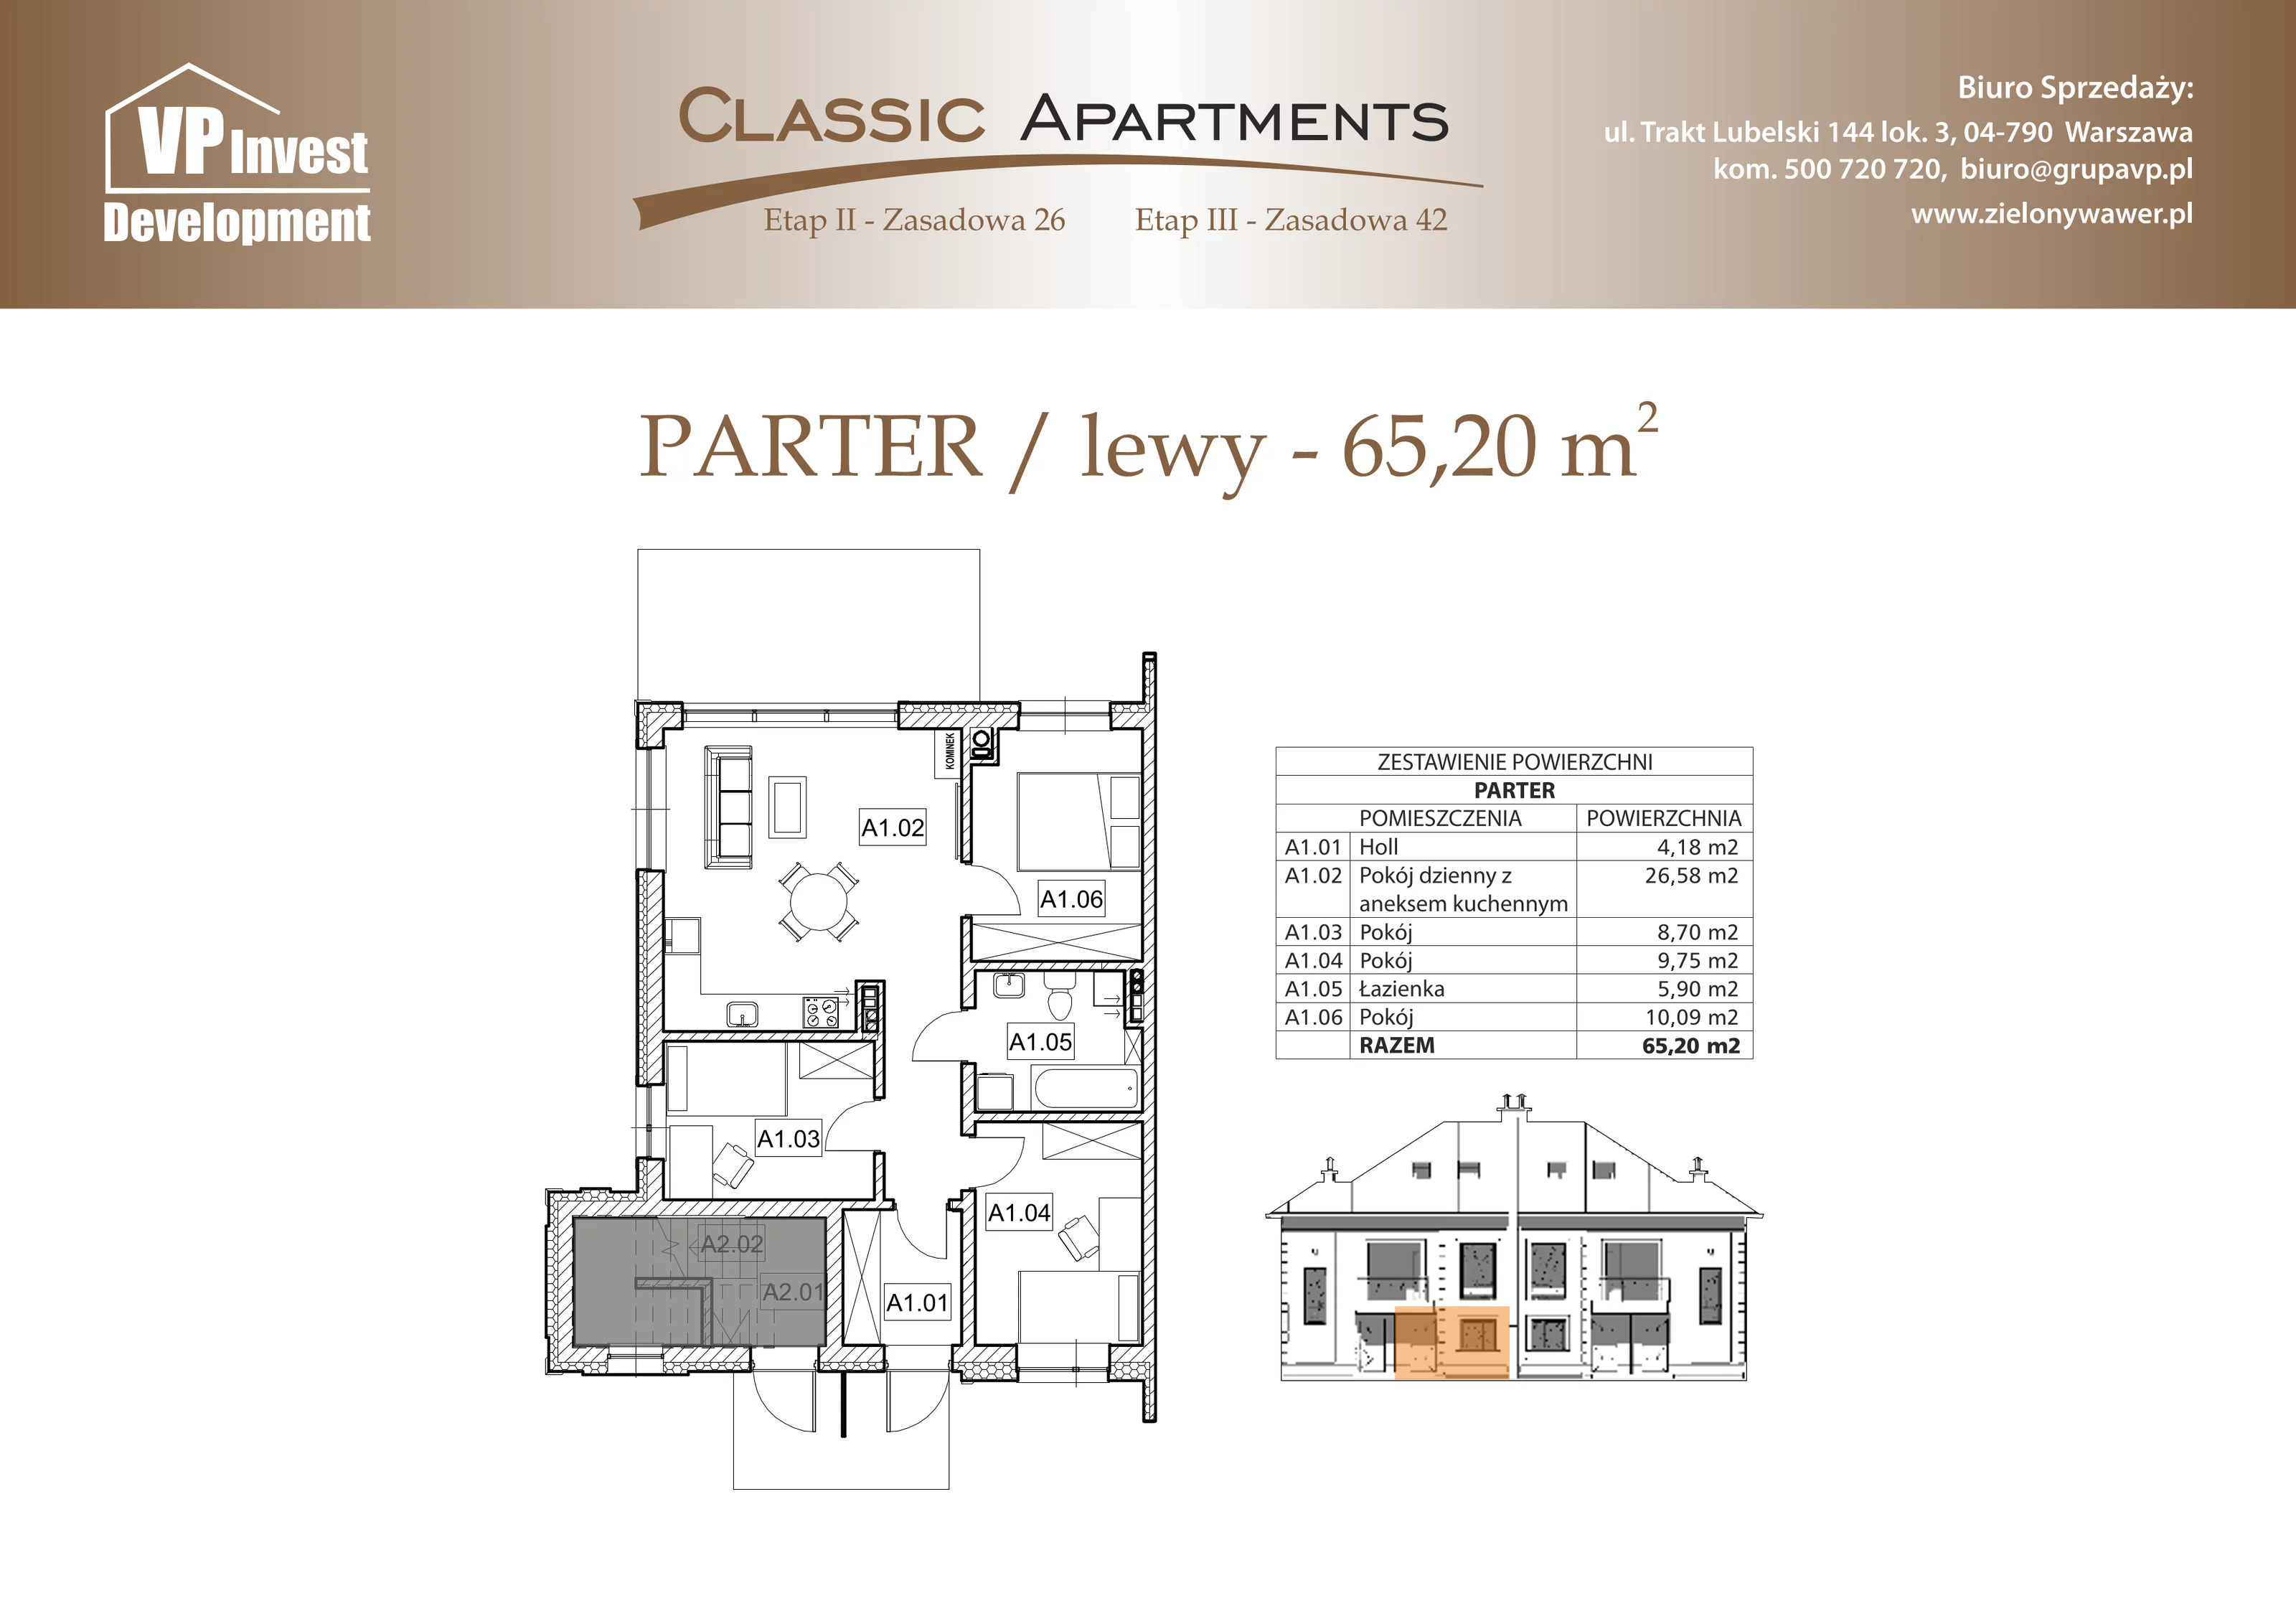 Apartament 65,20 m², parter, oferta nr CA5/16, Classic Apartments II, Warszawa, Wawer, Wawer, ul. Zasadowa 42